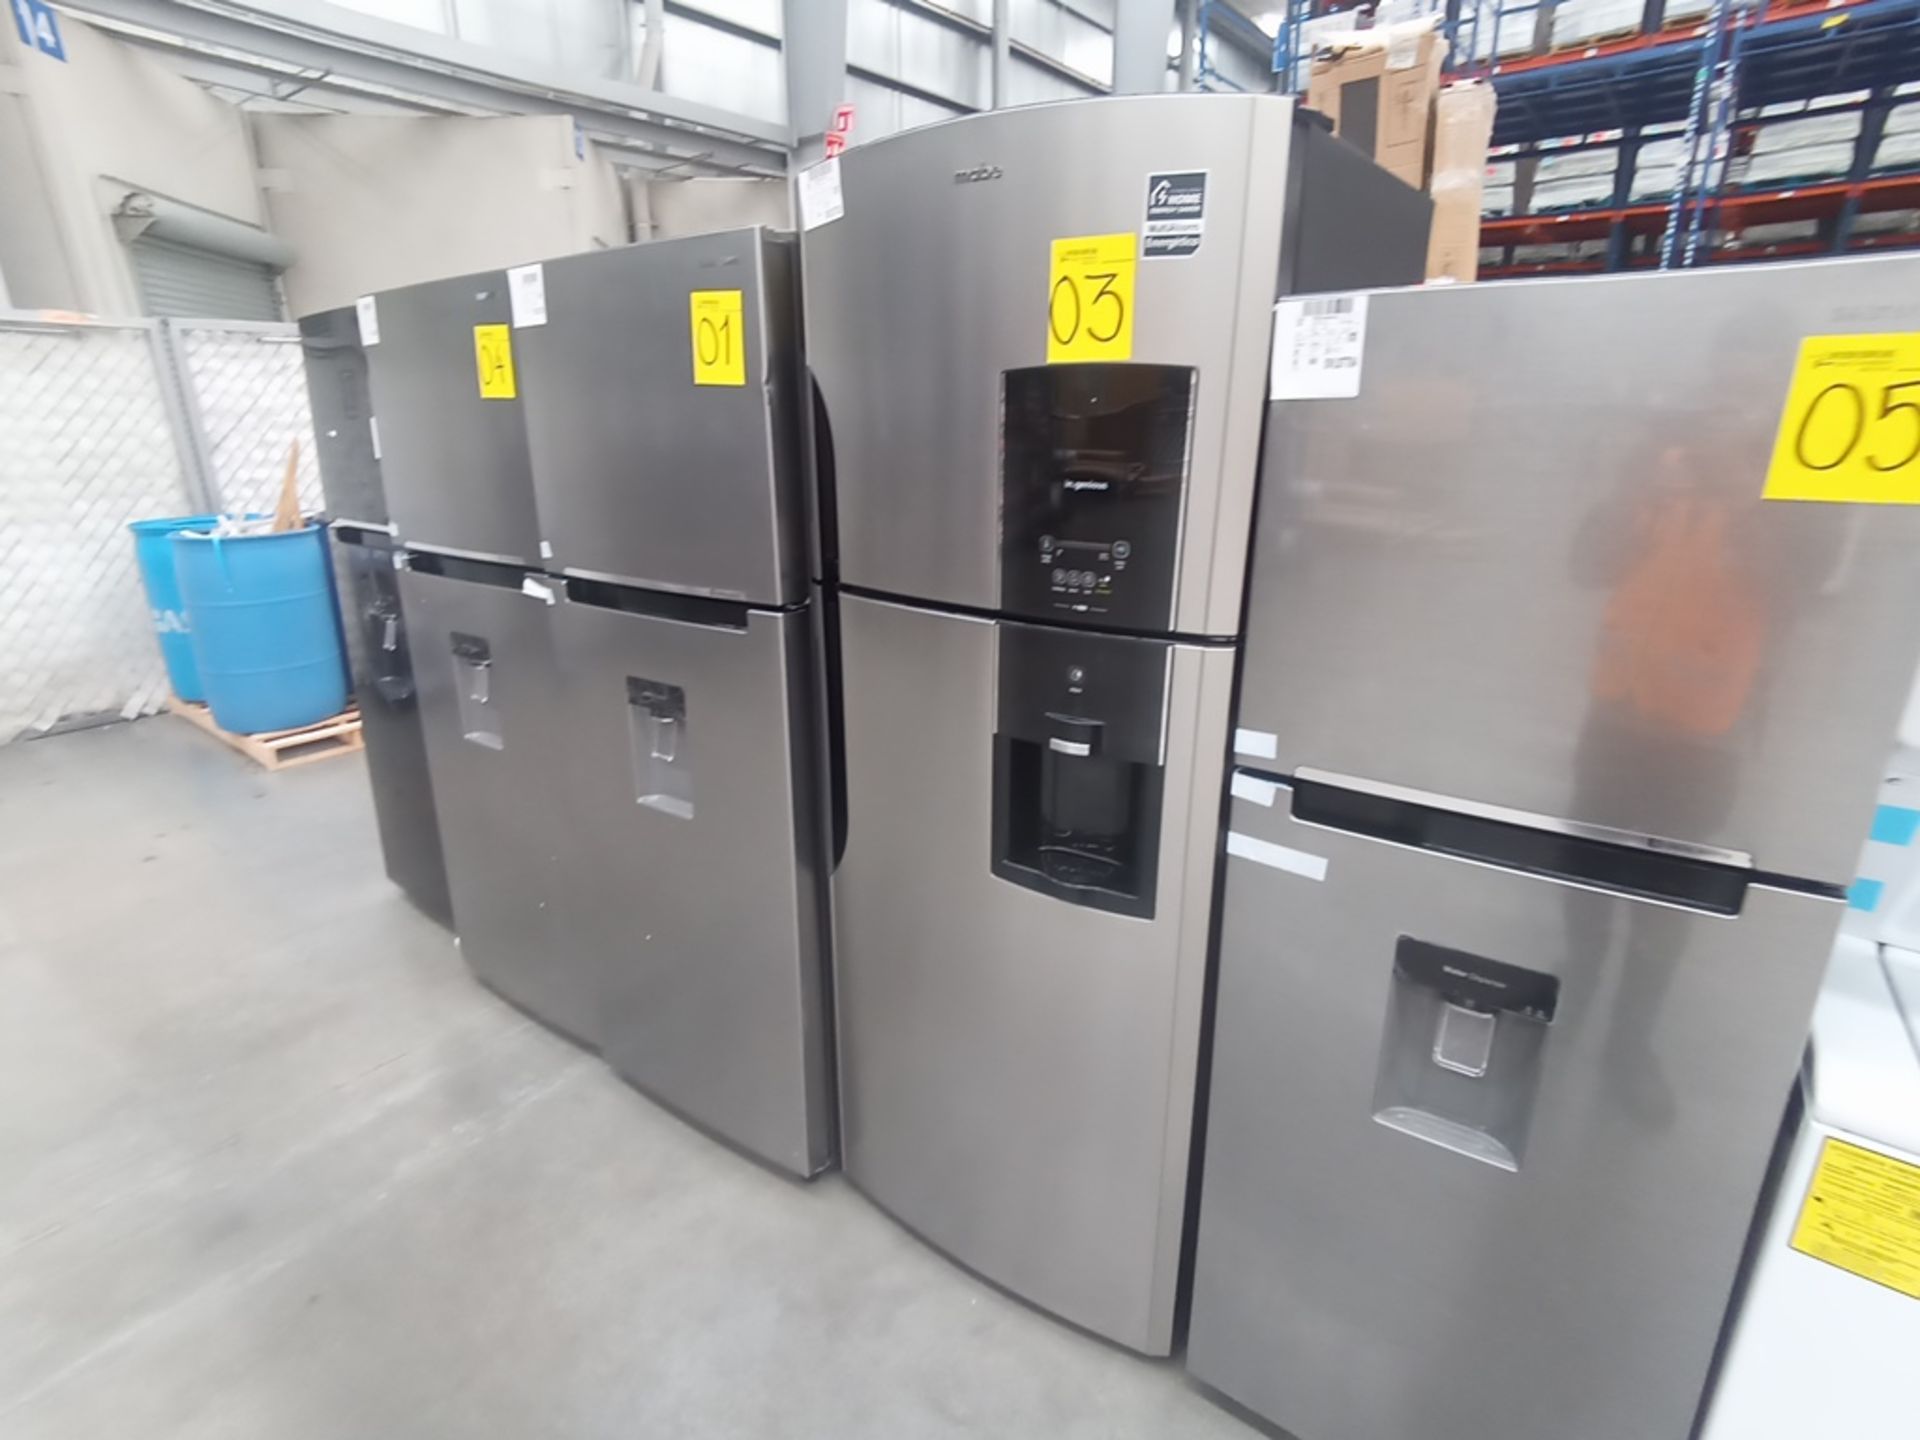 1 Refrigerador Marca Mabe, Modelo RMS6510IBMRXA, Serie 2201B408657, Color Gris, Golpeado, Favor de - Image 2 of 10